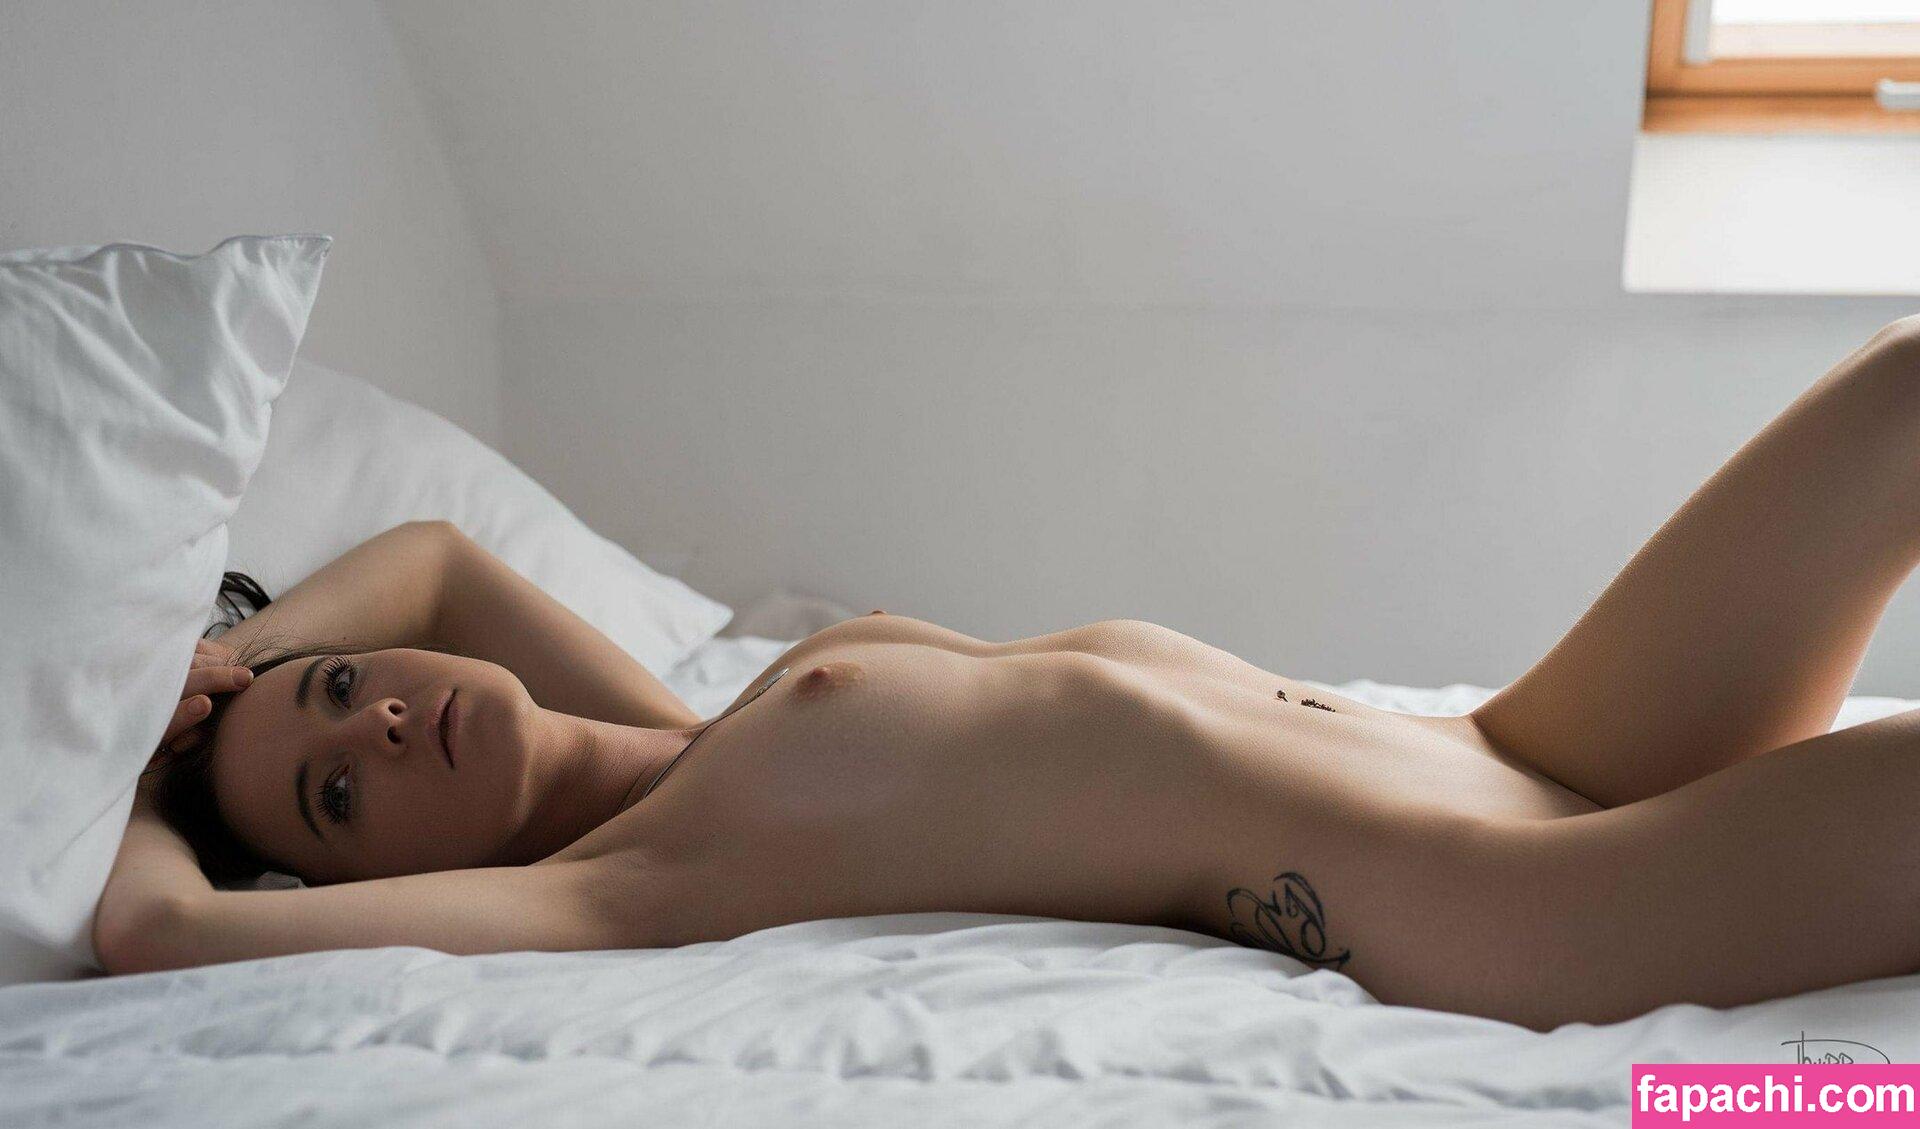 Jill Dewyn / brunettebabe / brunnettebabe leaked nude photo #0007 from OnlyFans/Patreon